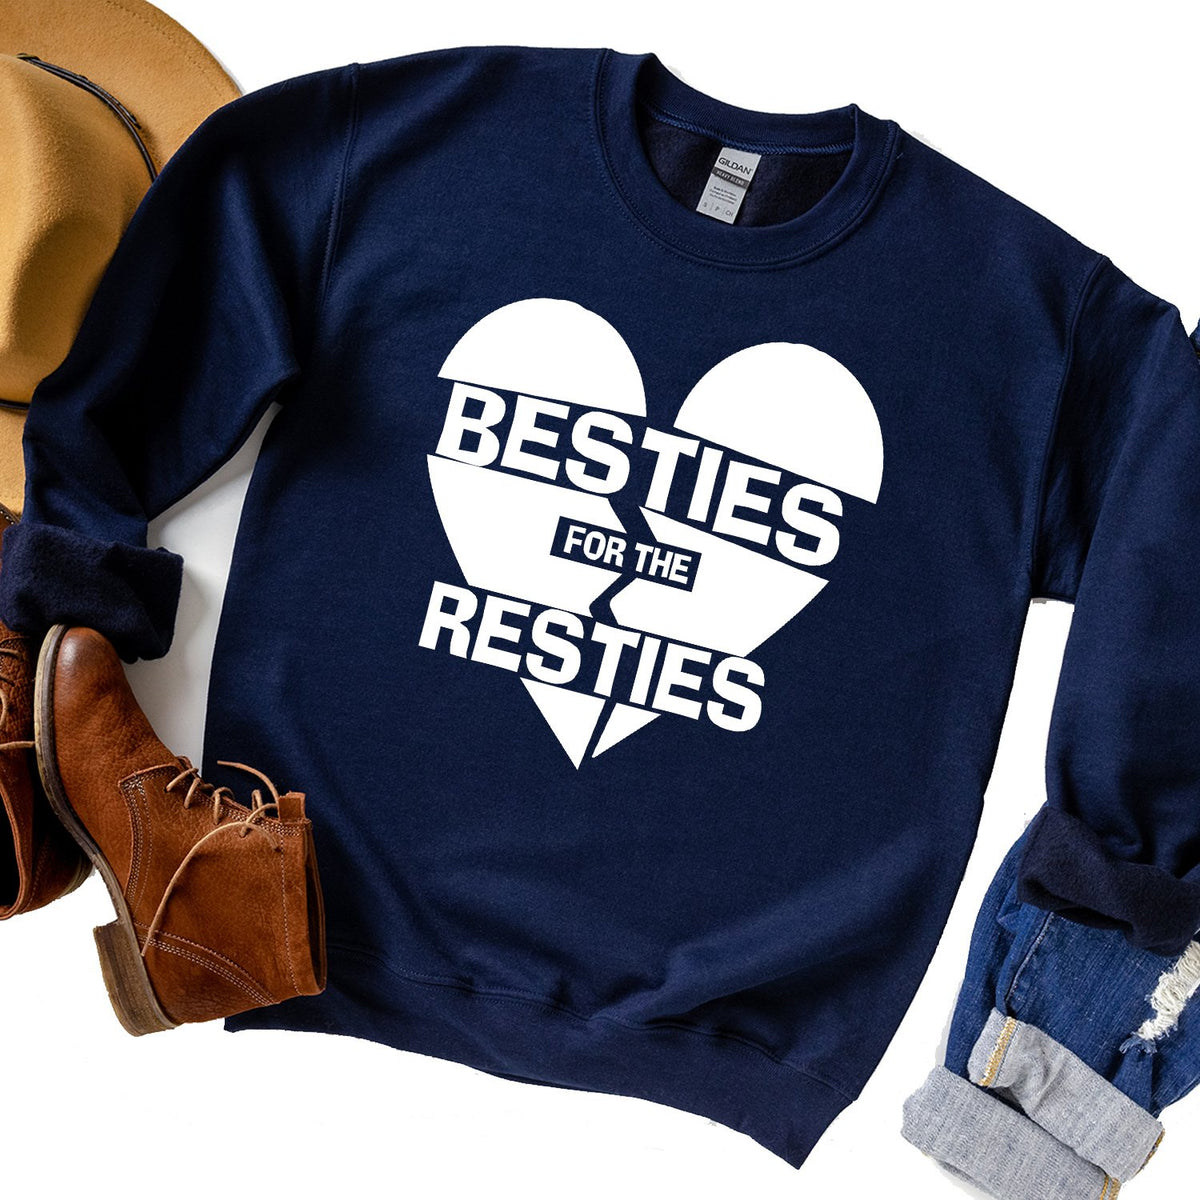 Besties For The Resties - Long Sleeve Heavy Crewneck Sweatshirt